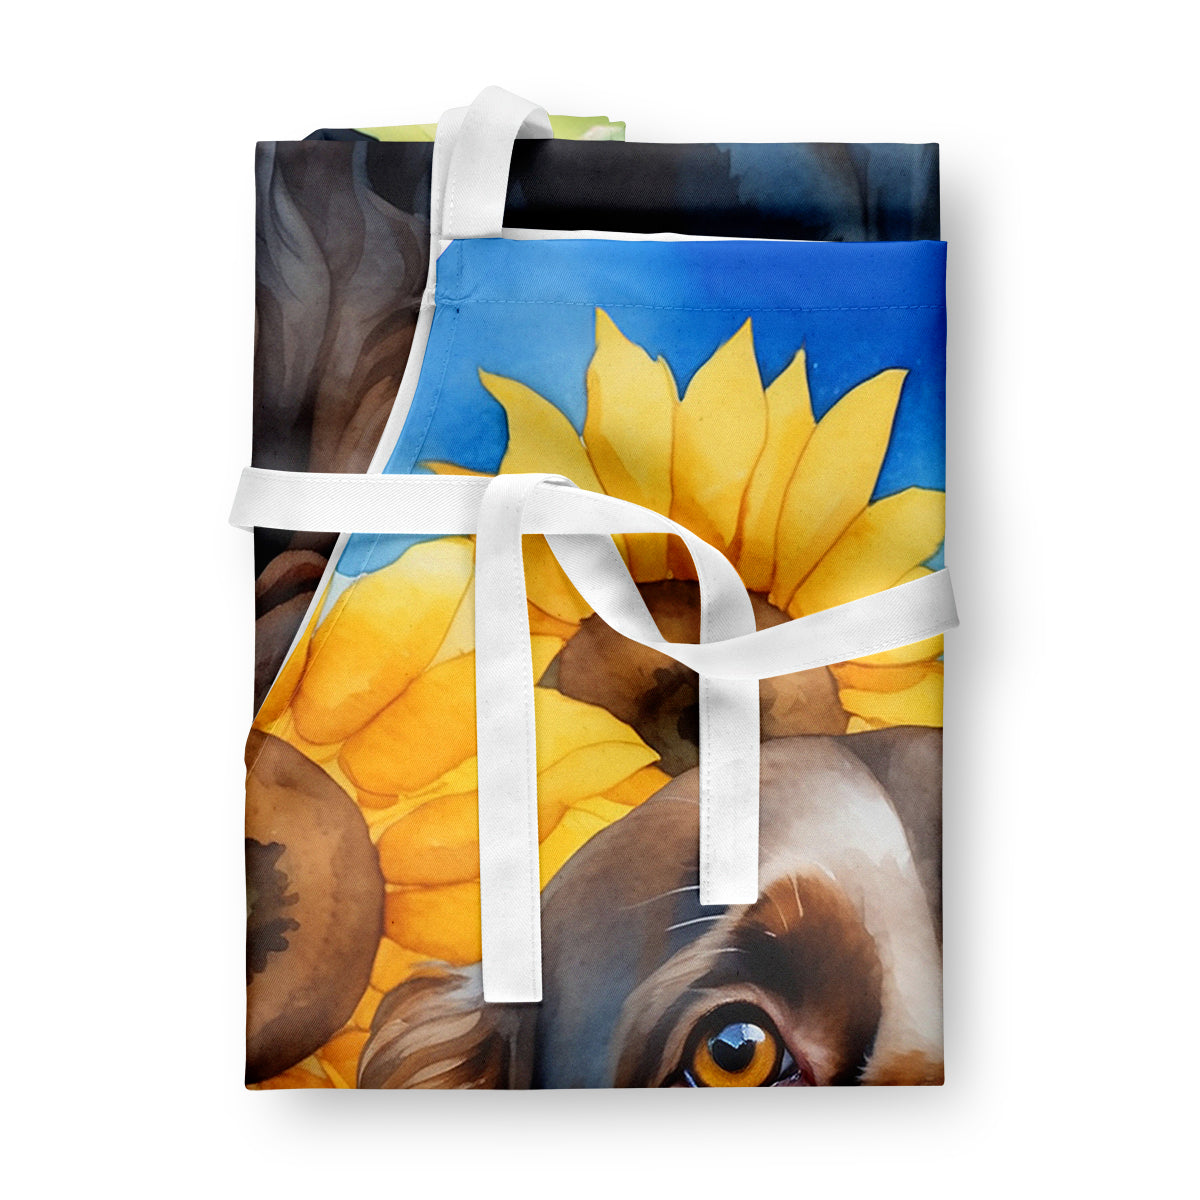 Boykin Spaniel in Sunflowers Apron